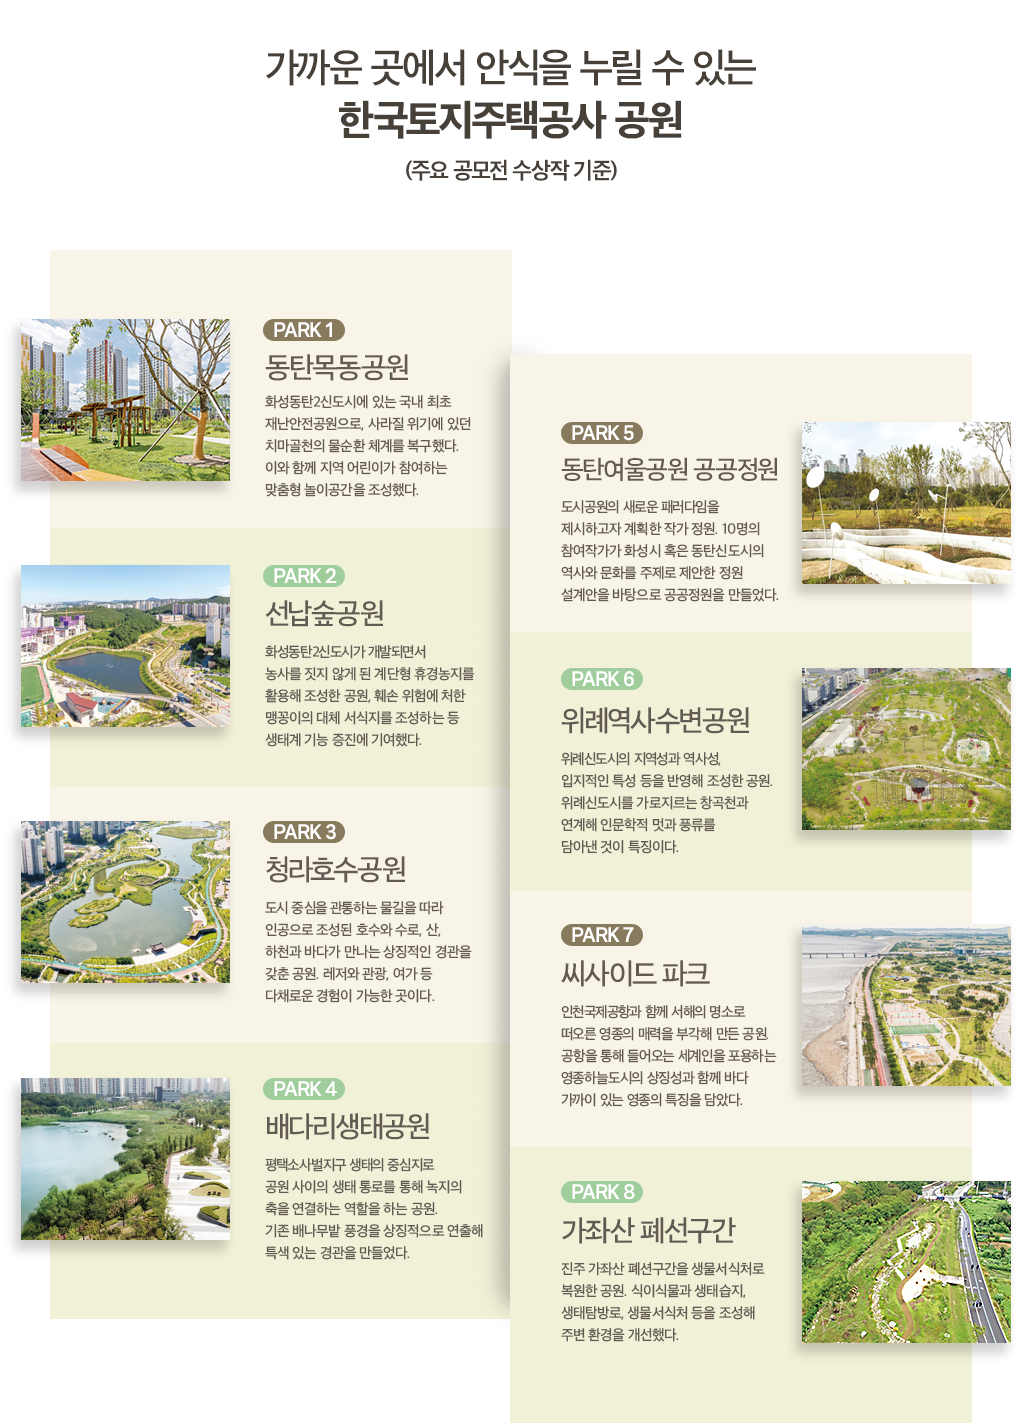 가까운 곳에서 안식을 누릴 수 있는 한국토지주택공사 공원